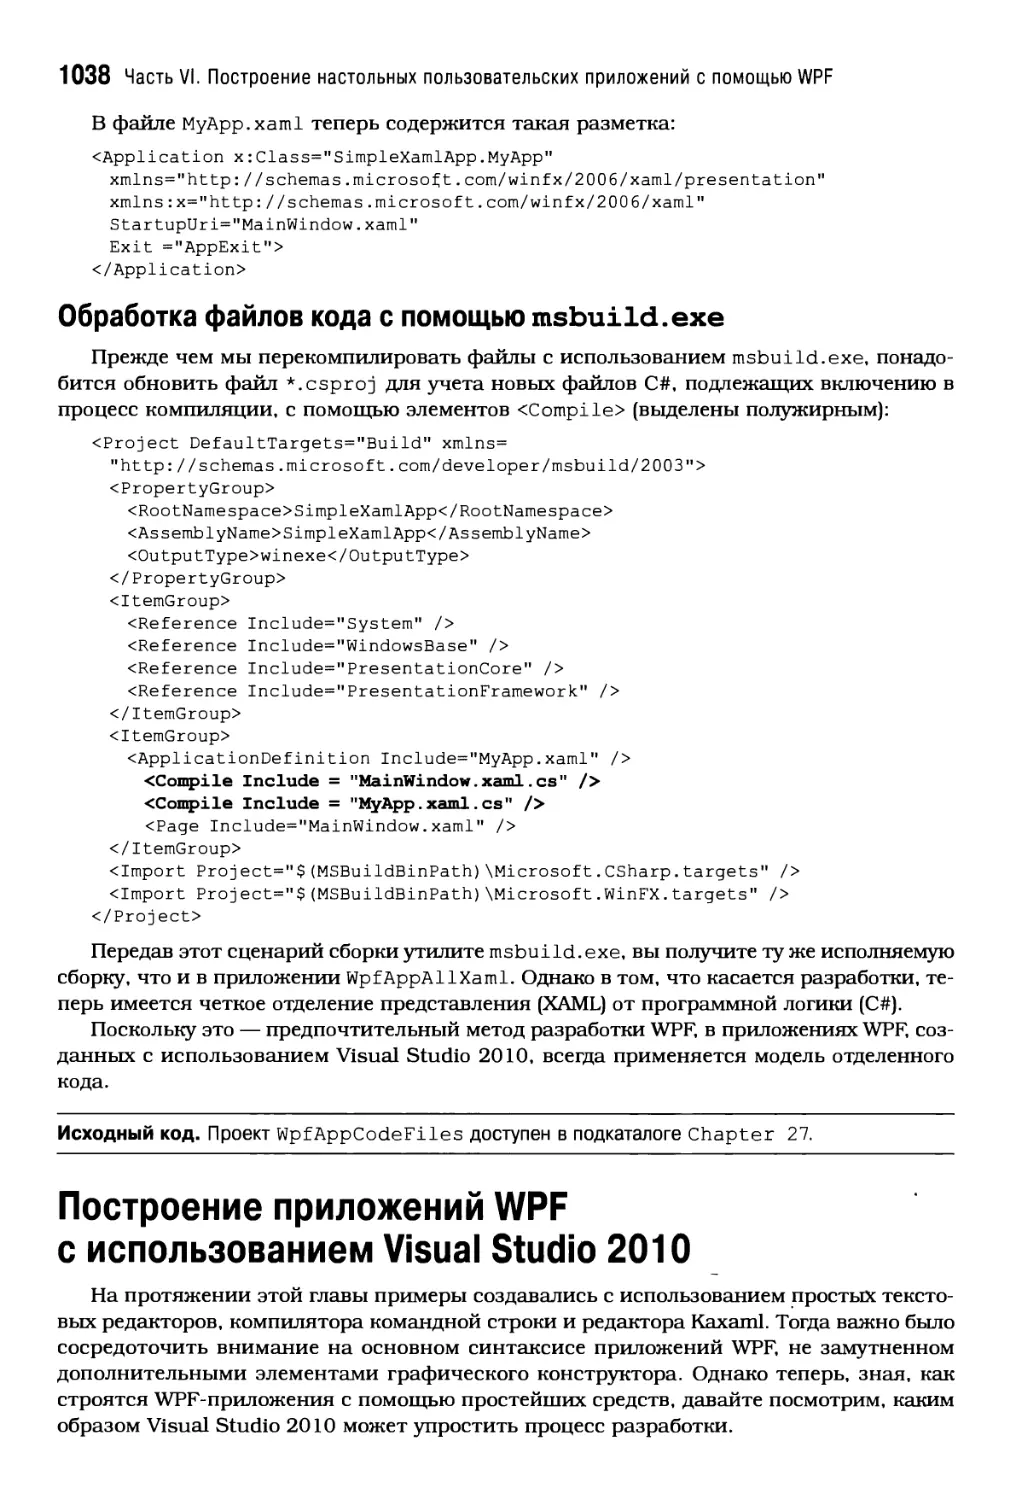 Обработка файлов кода с помощью msbuild.exe
Построение приложений WPF с использованием Visual Studio 2010